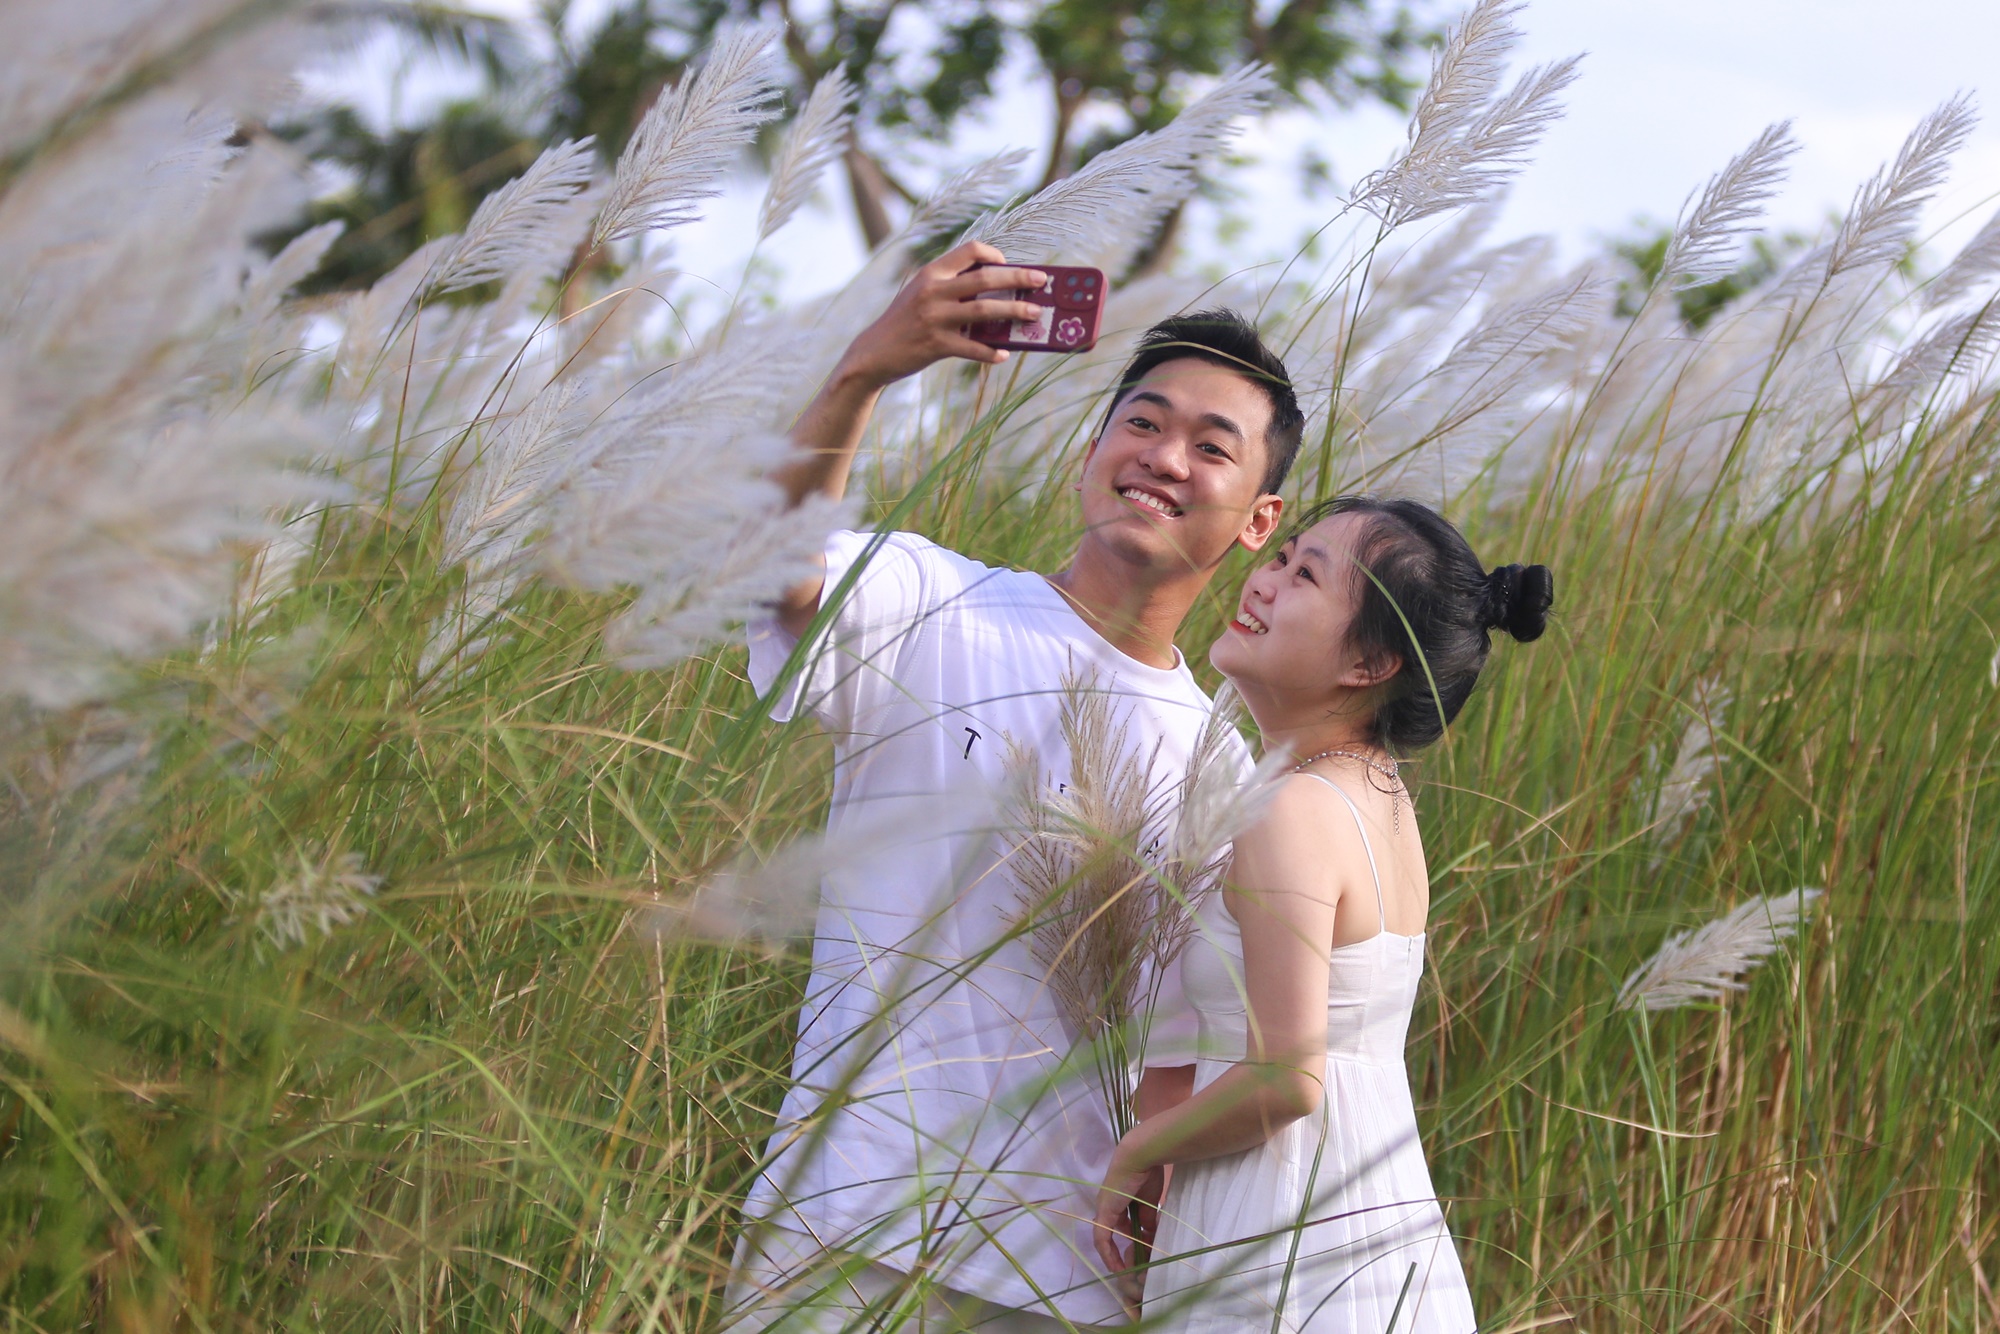 Người dân và du khách đổ xô check-in đồng cỏ lau trắng ở Đà Nẵng - Ảnh 3.